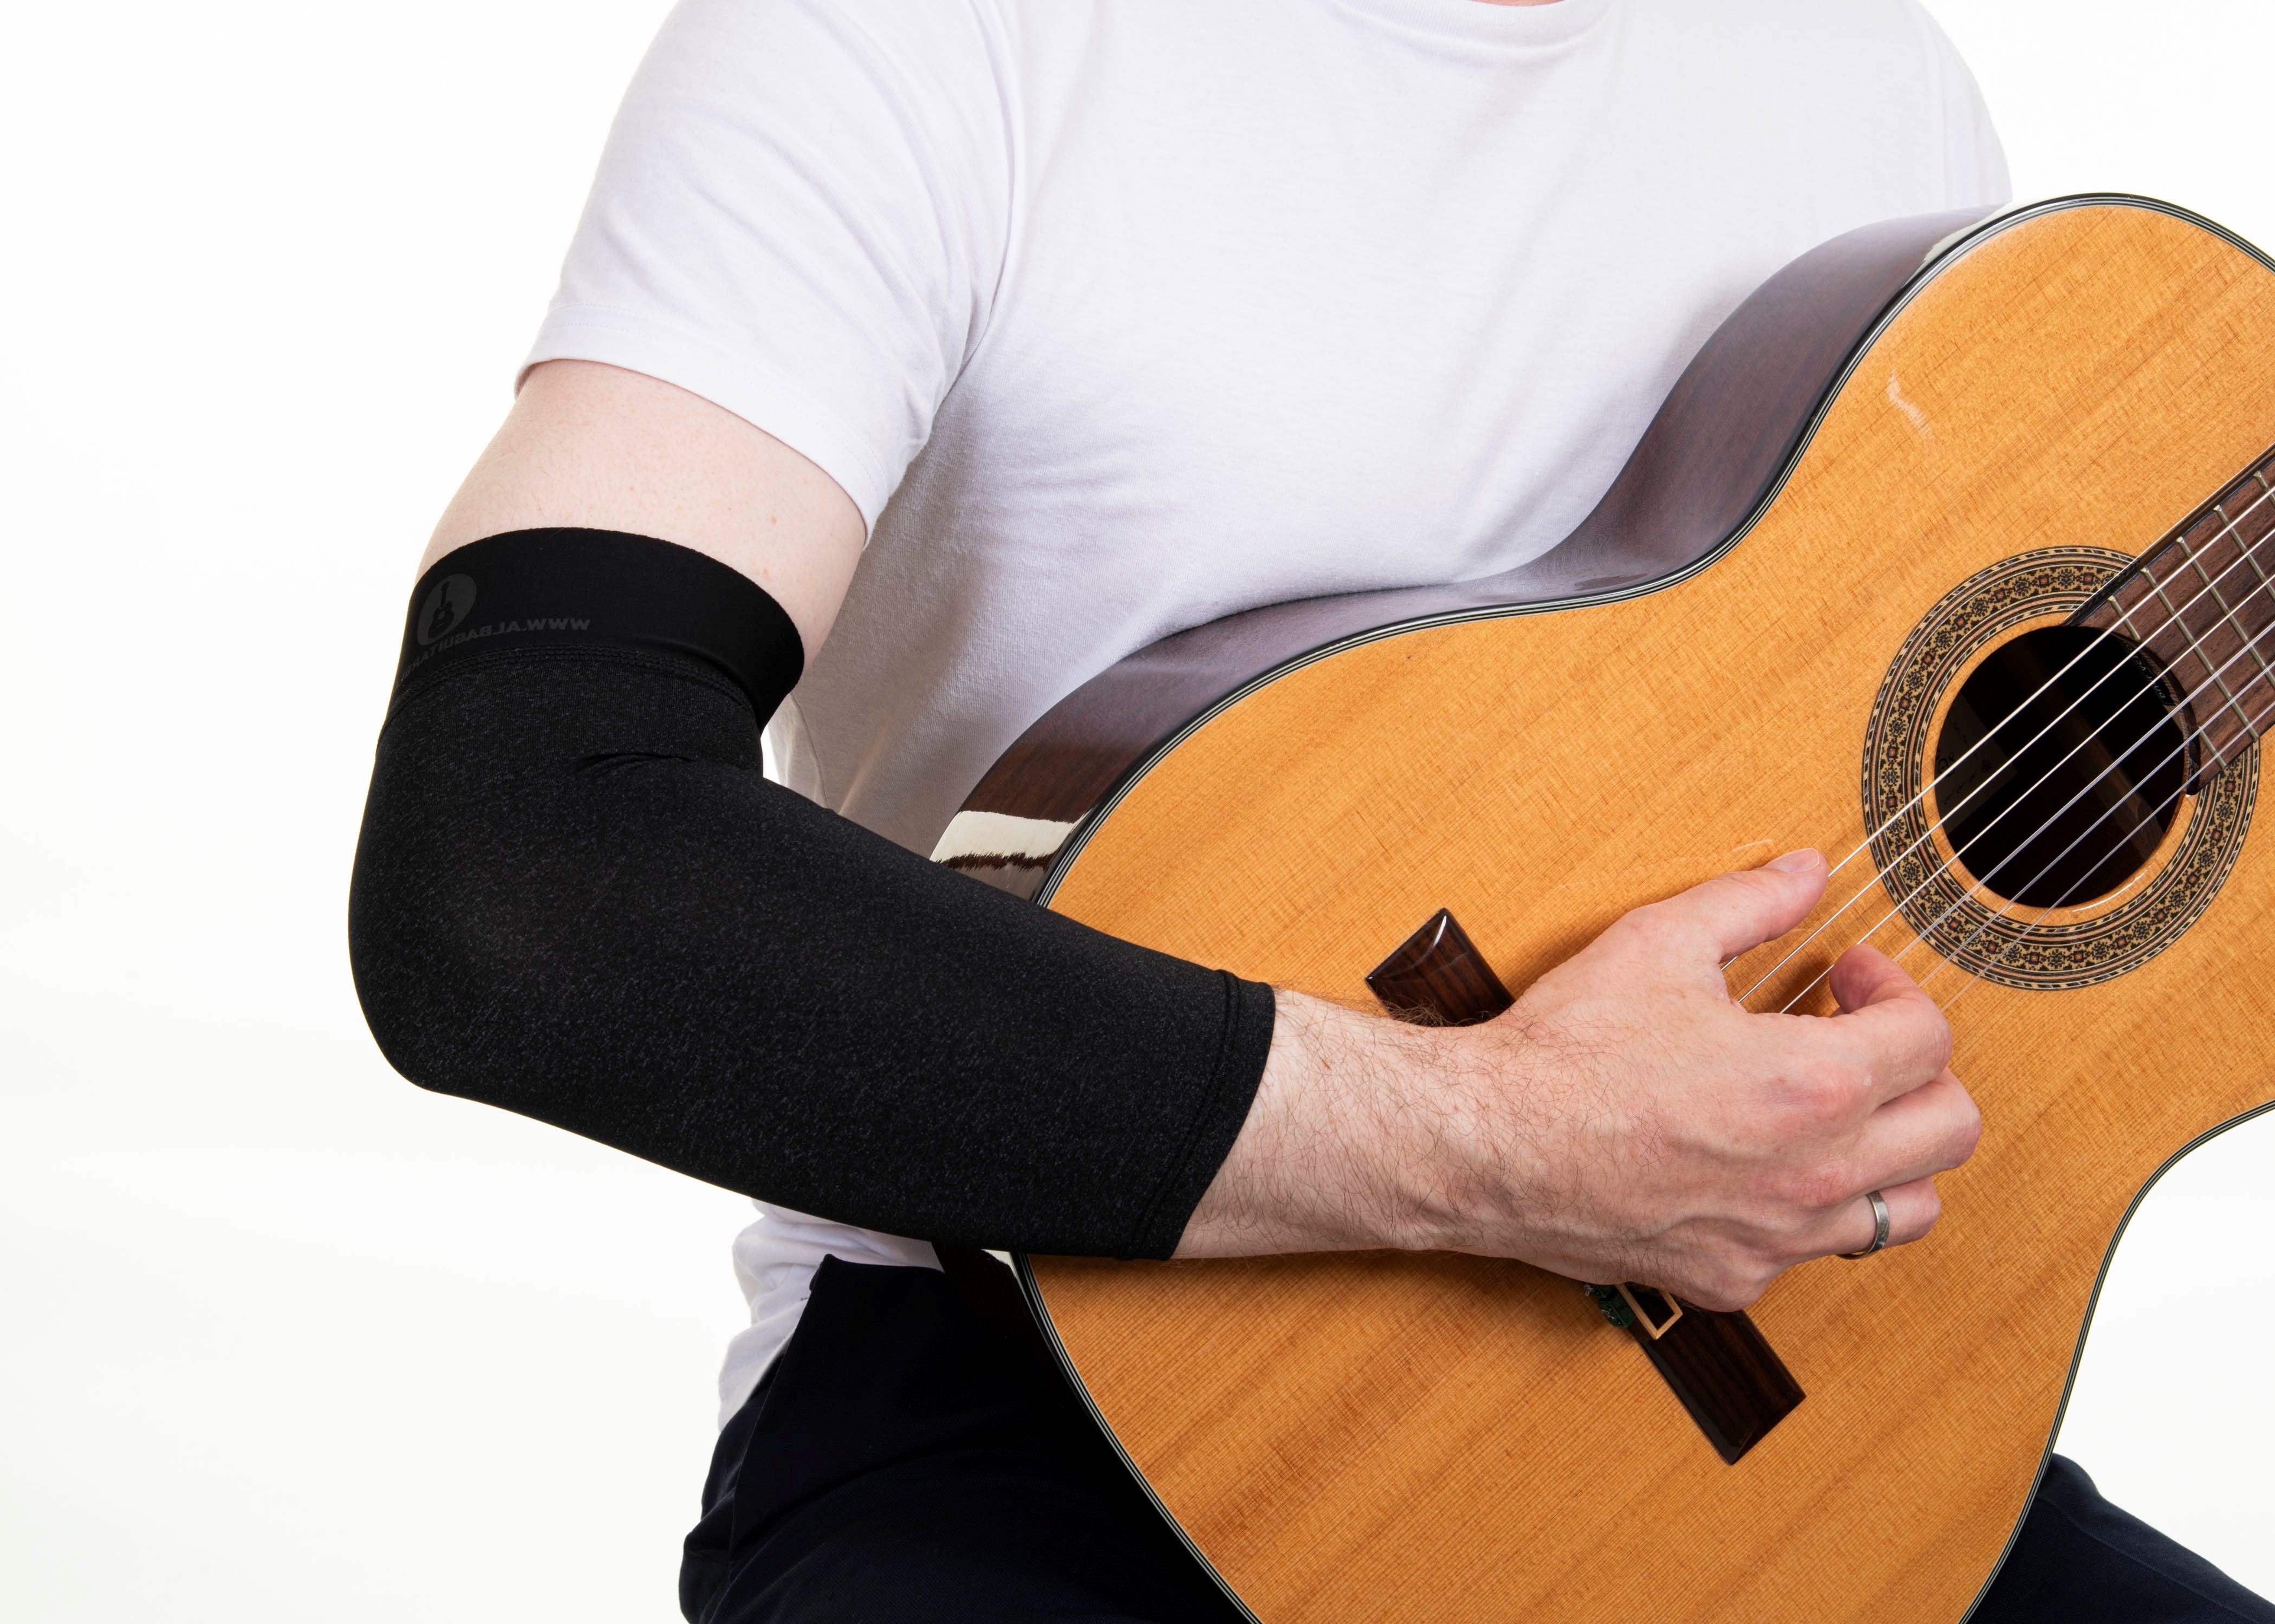 Alba Guitar Sleeves - Maniche per chitarra, Protezione del braccio per le tue chitarre classiche